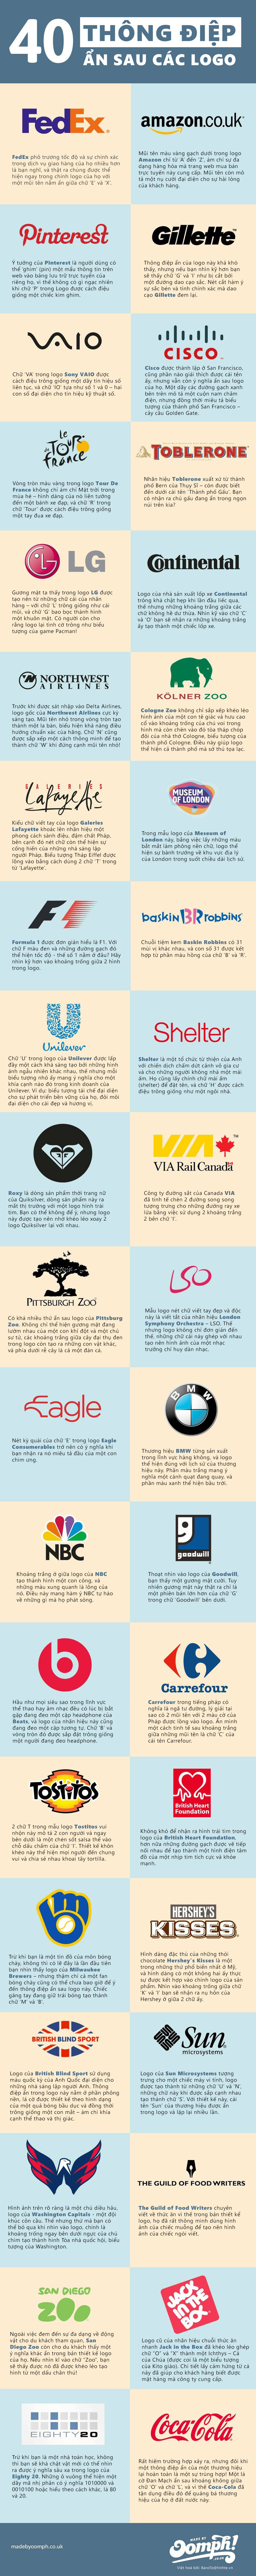 [Infographic] 40 logo ẩn chứa thông điệp doanh nghiệp 10